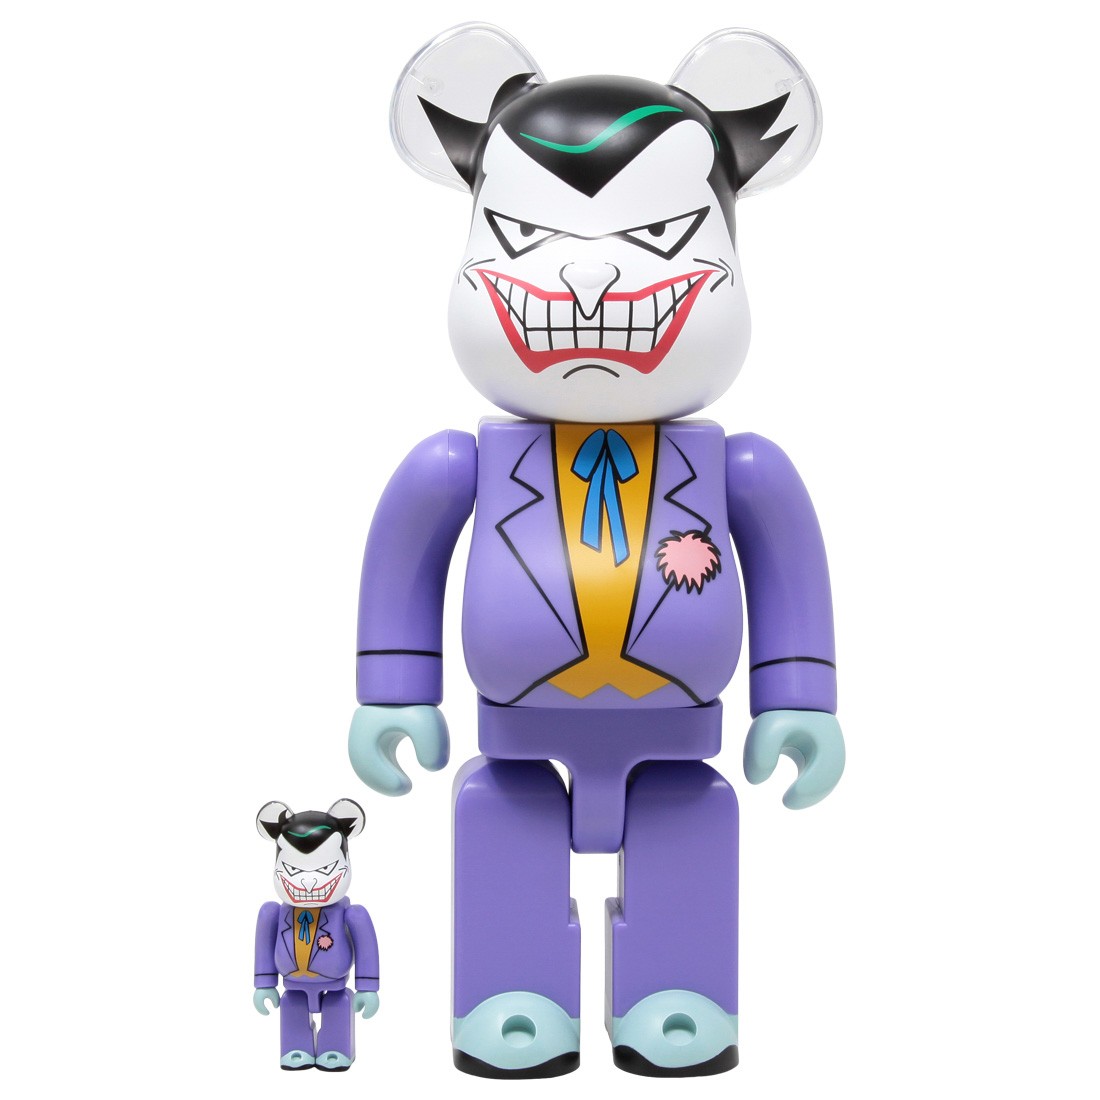 Medicom Joker Batman The Animated Series Version 100% 400% Bearbrick Figure Set (purple)